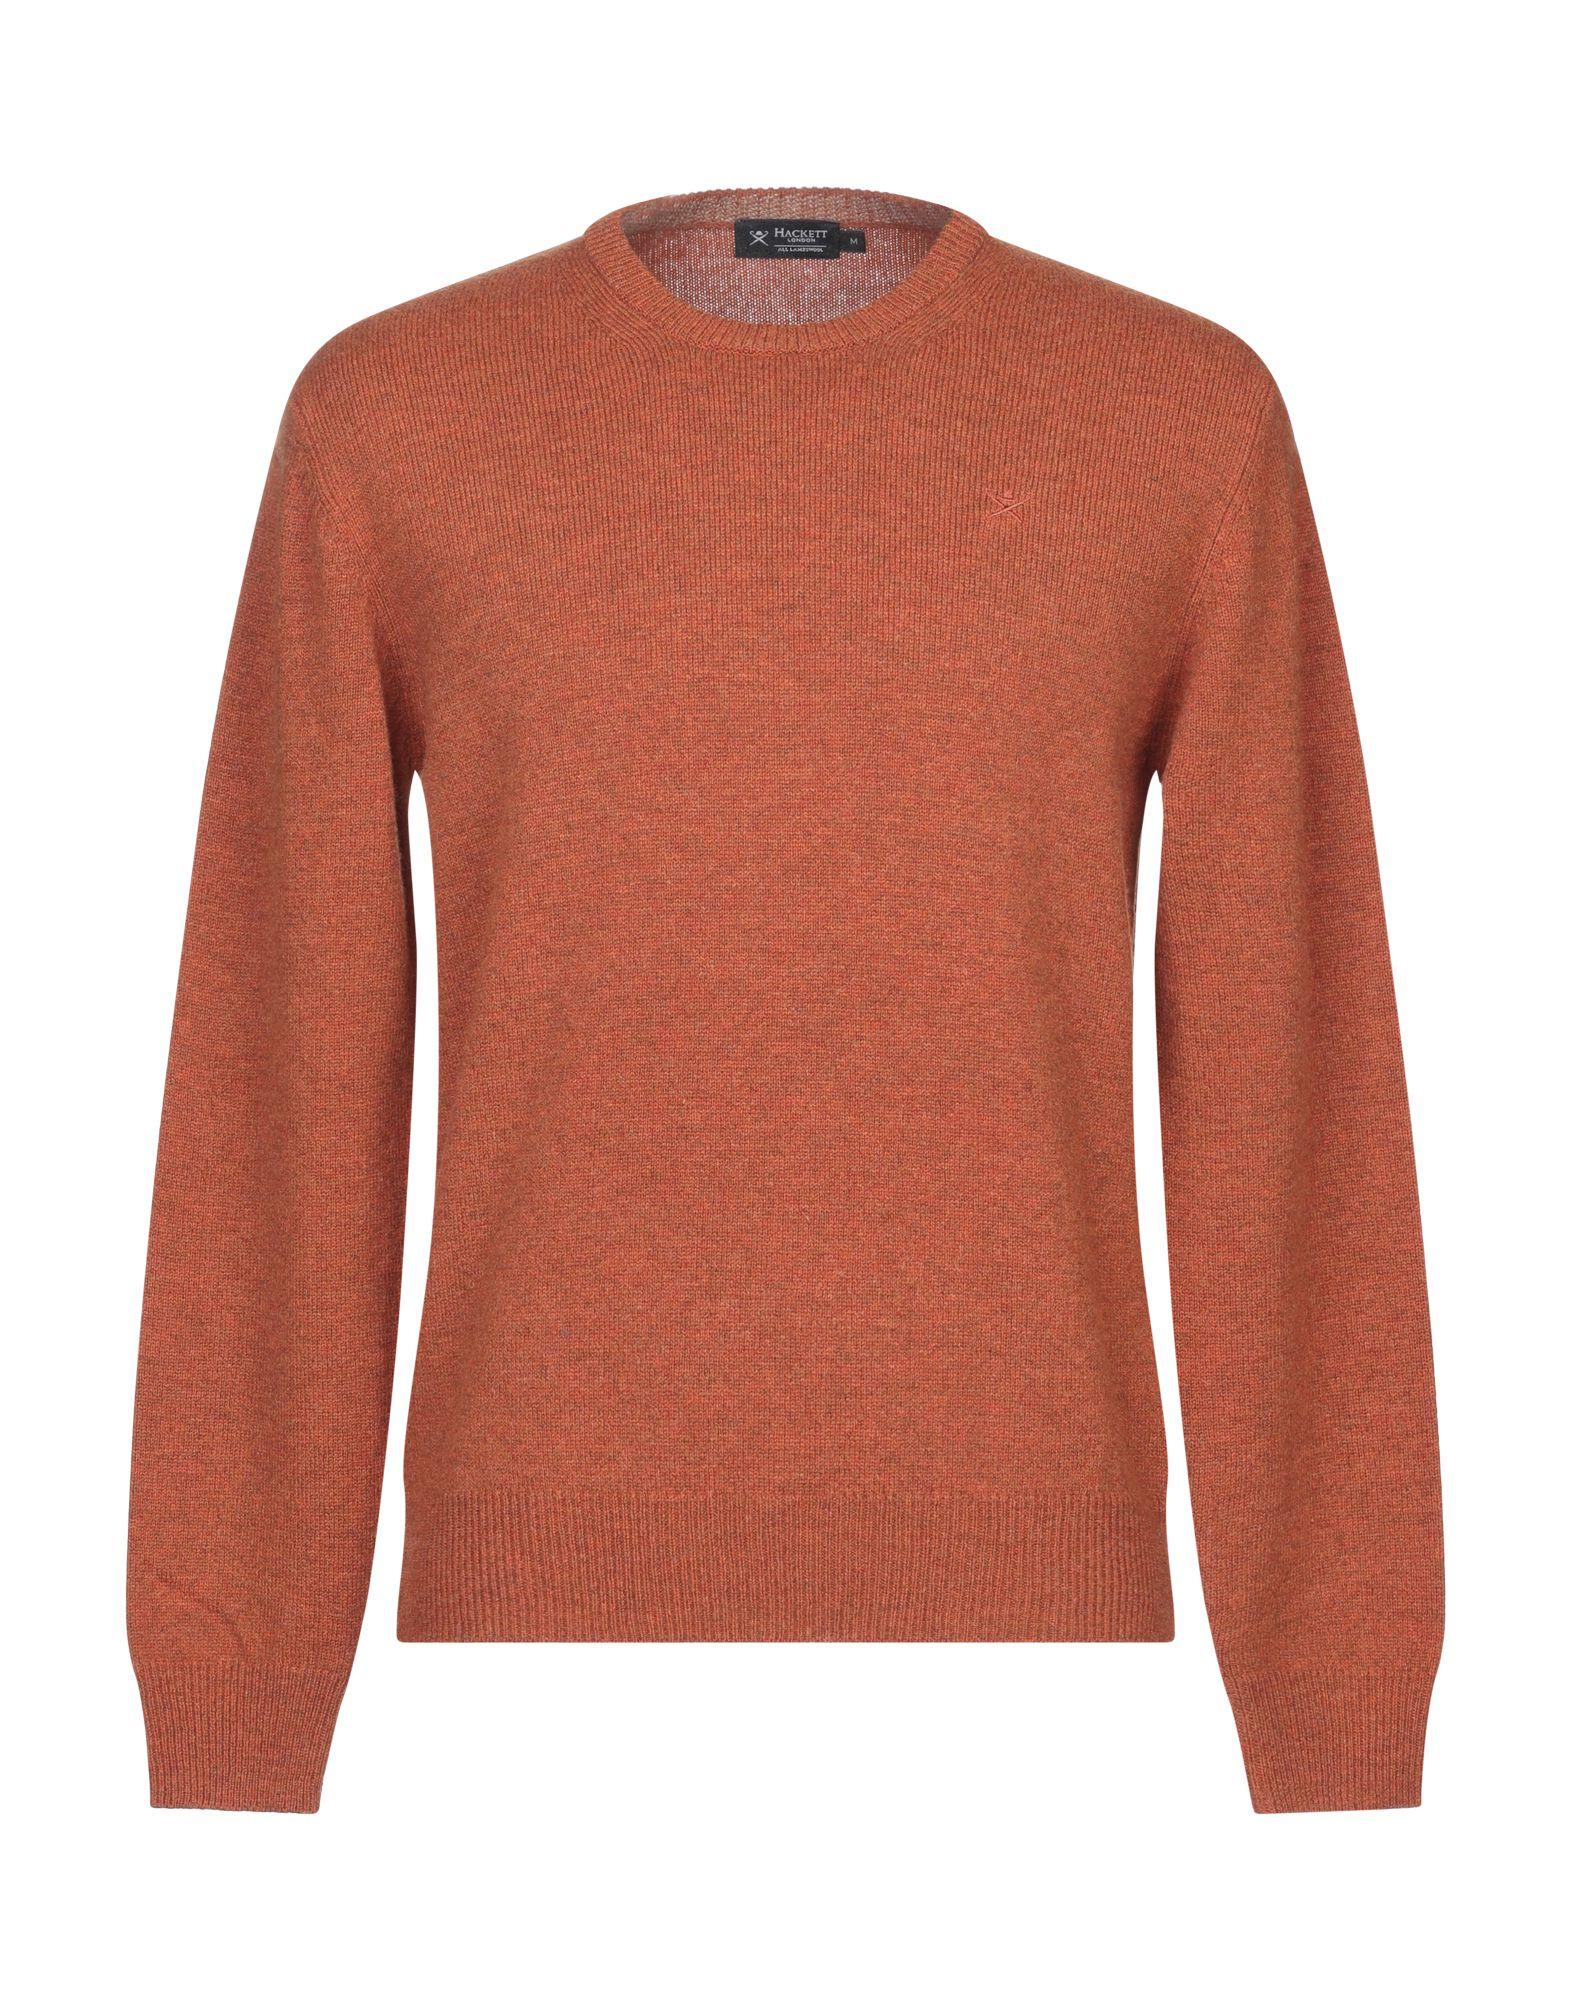 Hackett Wool Sweater in Rust (Orange) for Men - Lyst